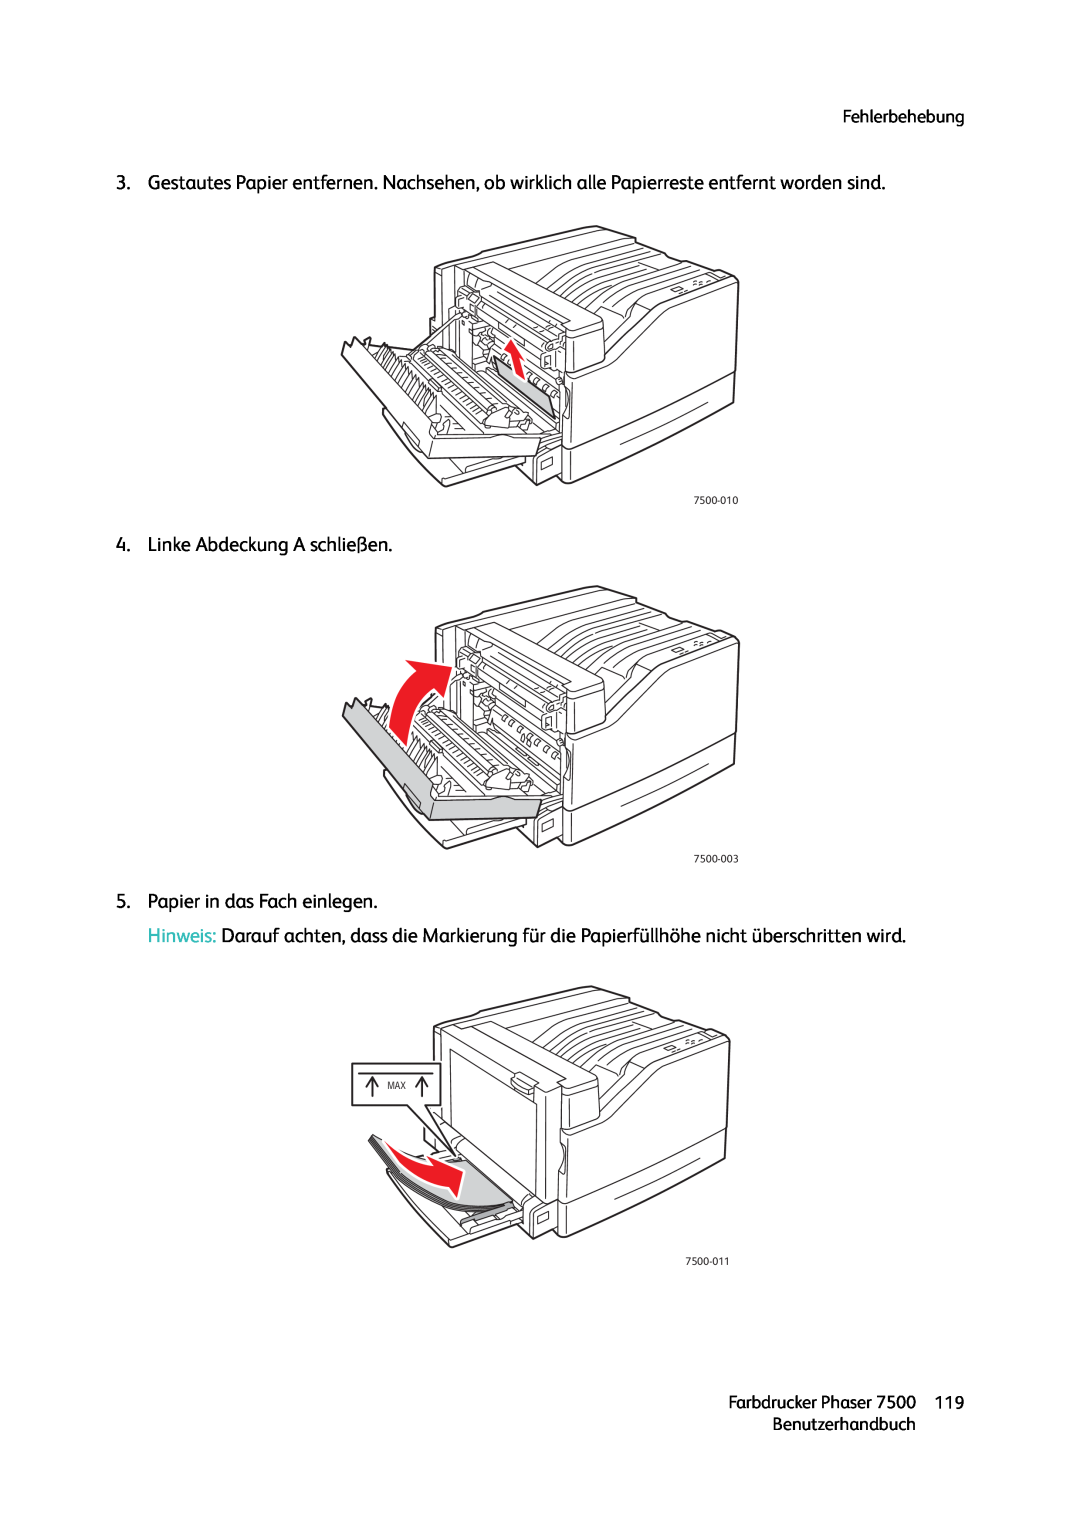 Xerox 7500 color printer manual Linke Abdeckung A schließen, Papier in das Fach einlegen, Fehlerbehebung, Benutzerhandbuch 